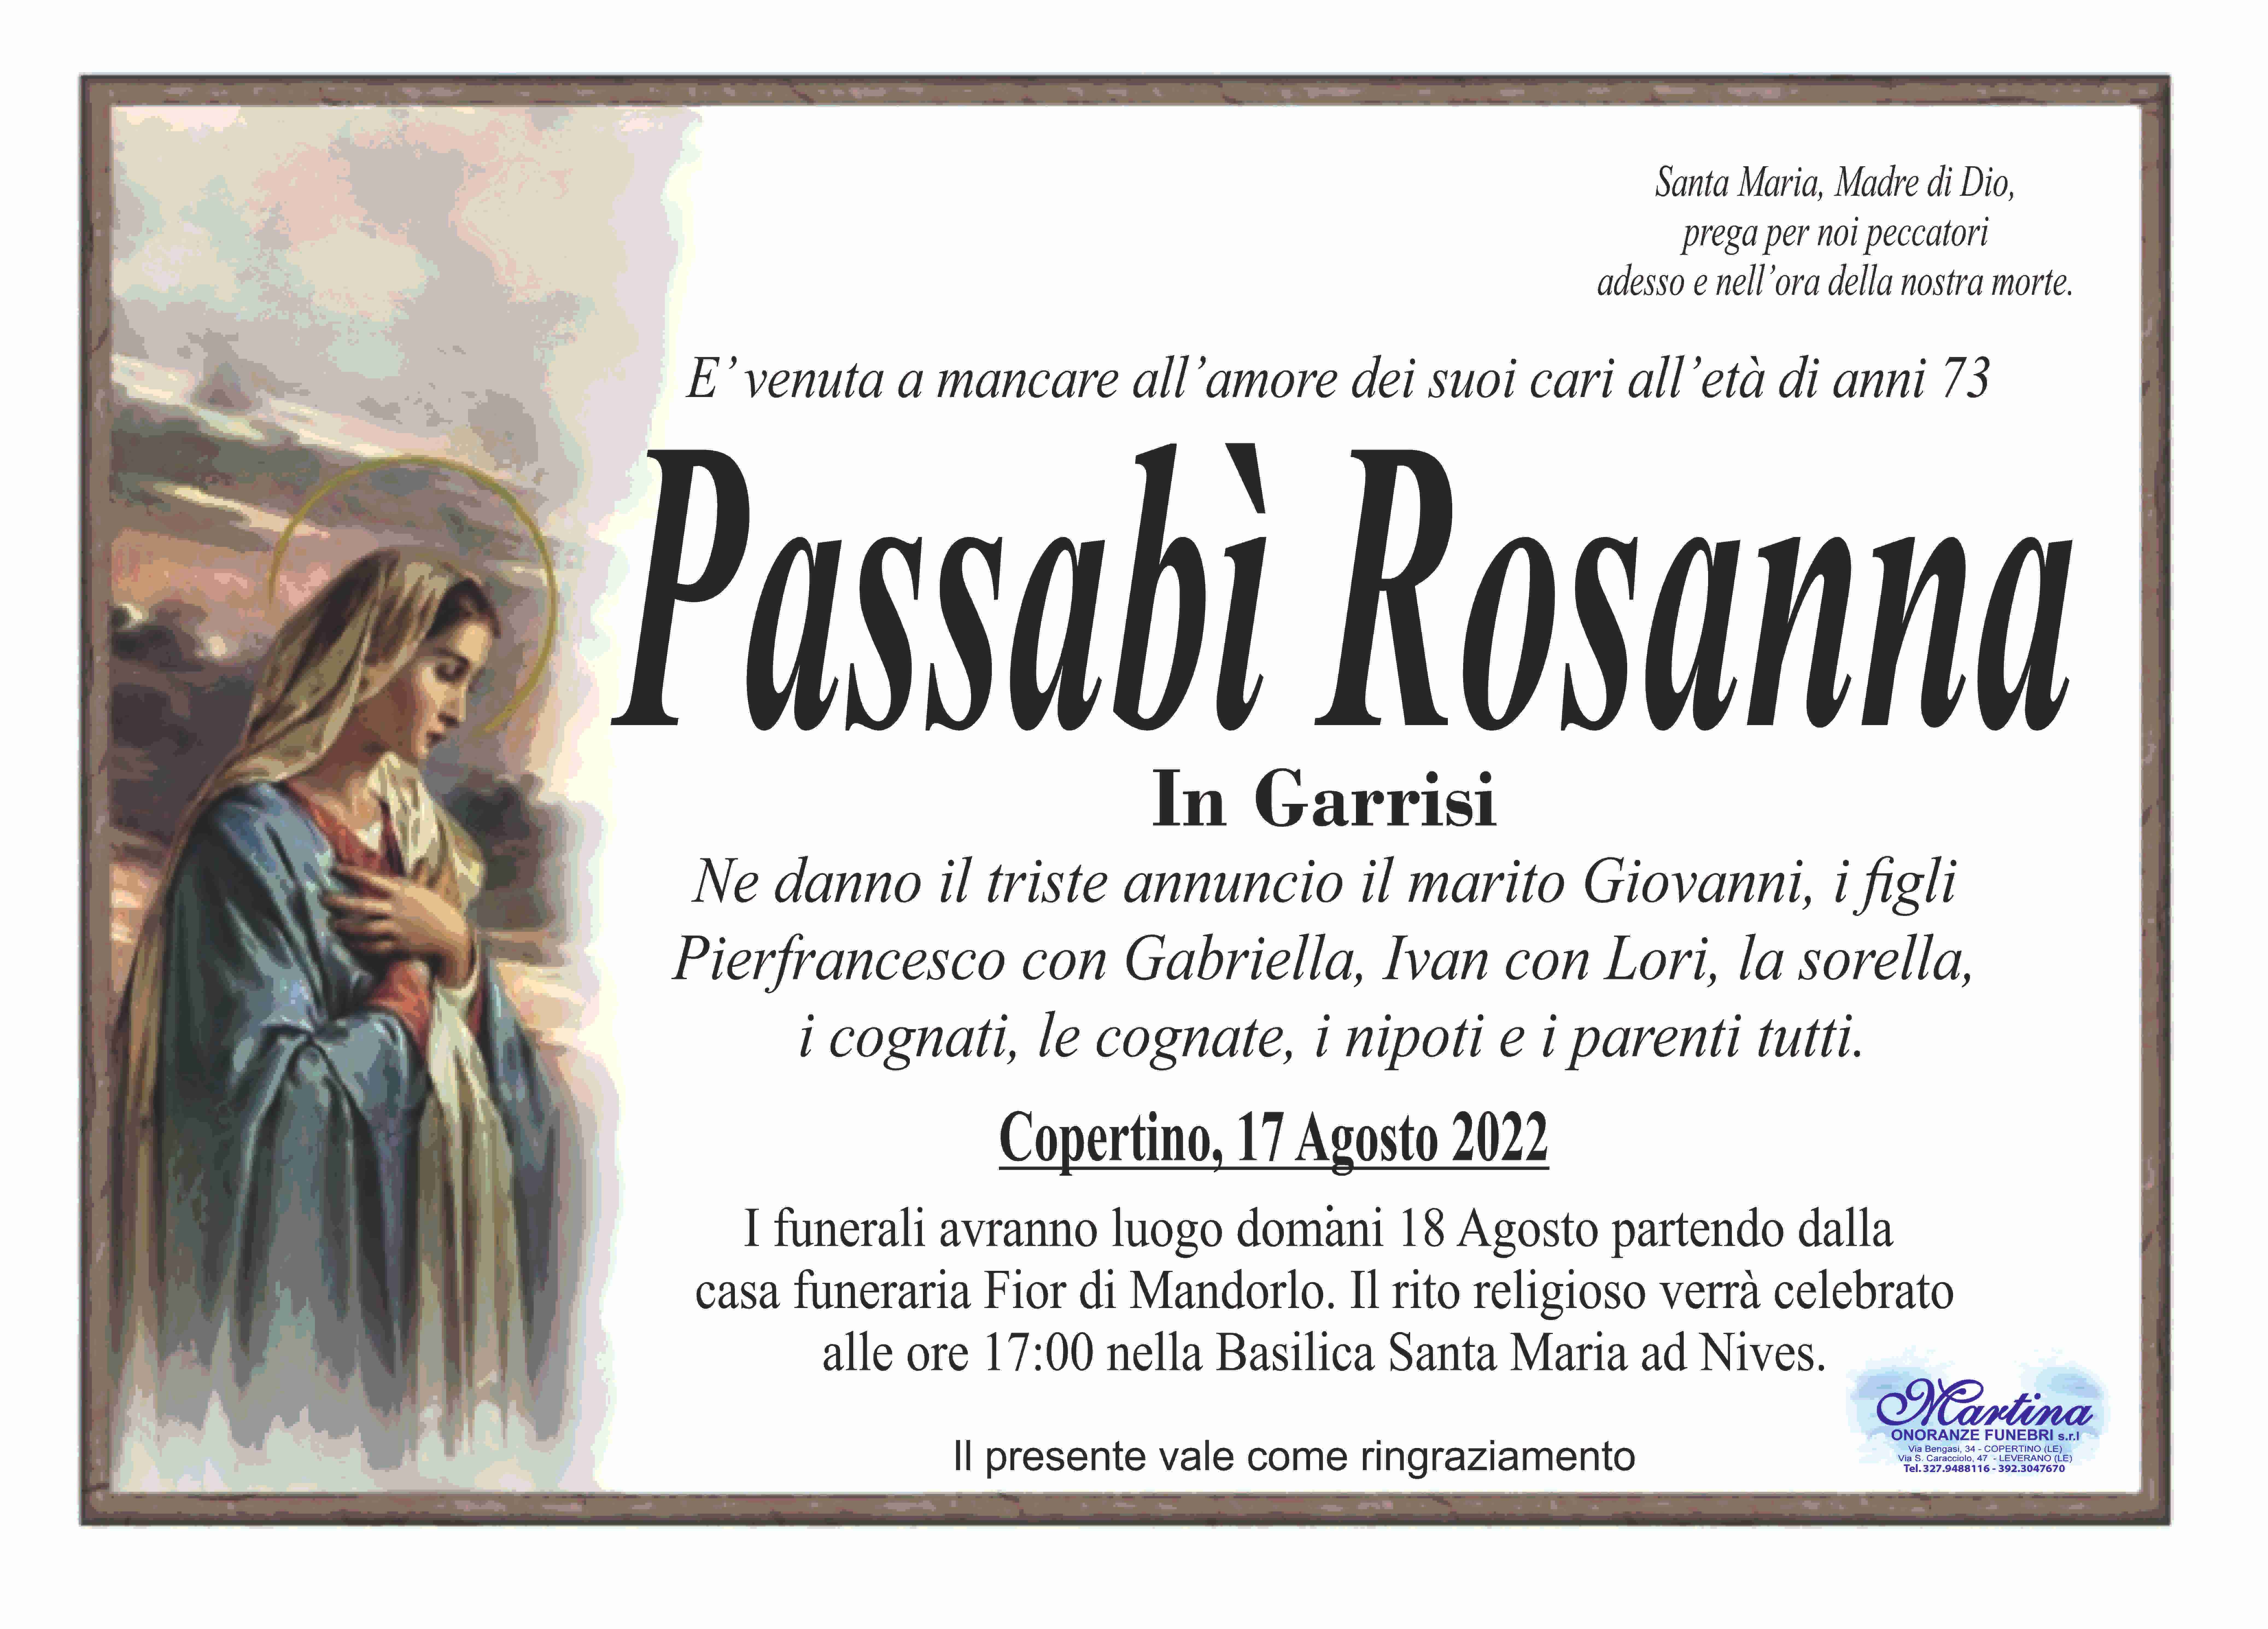 Rosanna Passabì